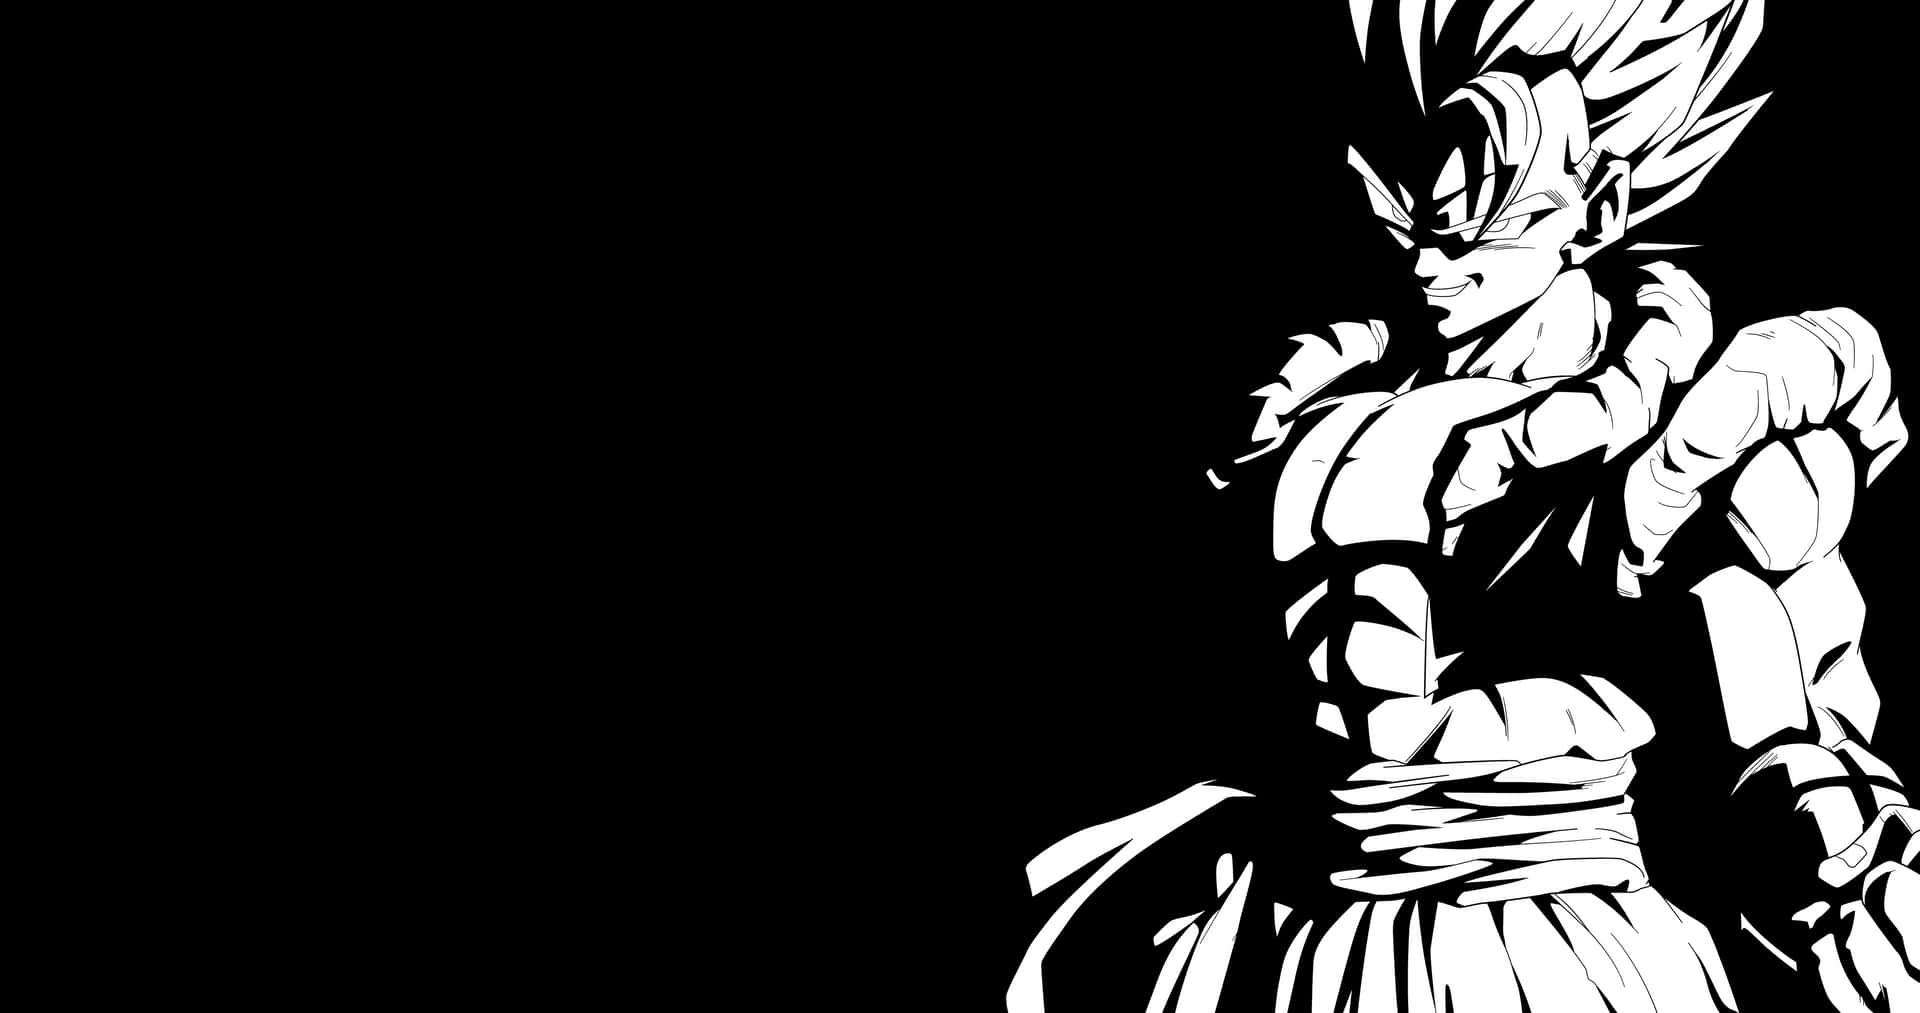 Vegeta,die Ikonische Figur Aus Dragon Ball Z, In Schwarz-weiß. Wallpaper